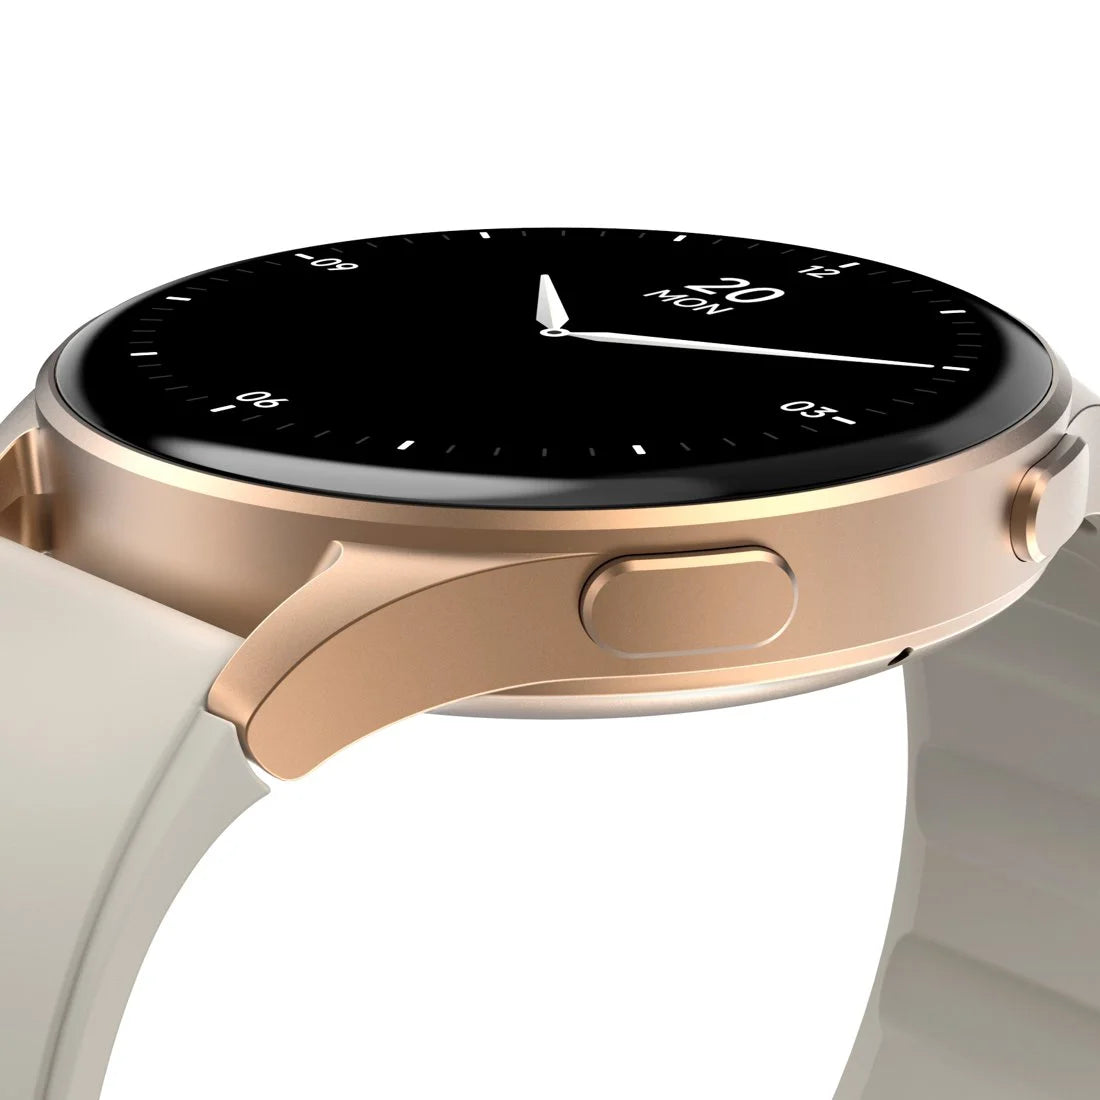 Smartwatch damski Hama 8900 GPS AMOLED zara koperta złota ramka pasek silikonowy